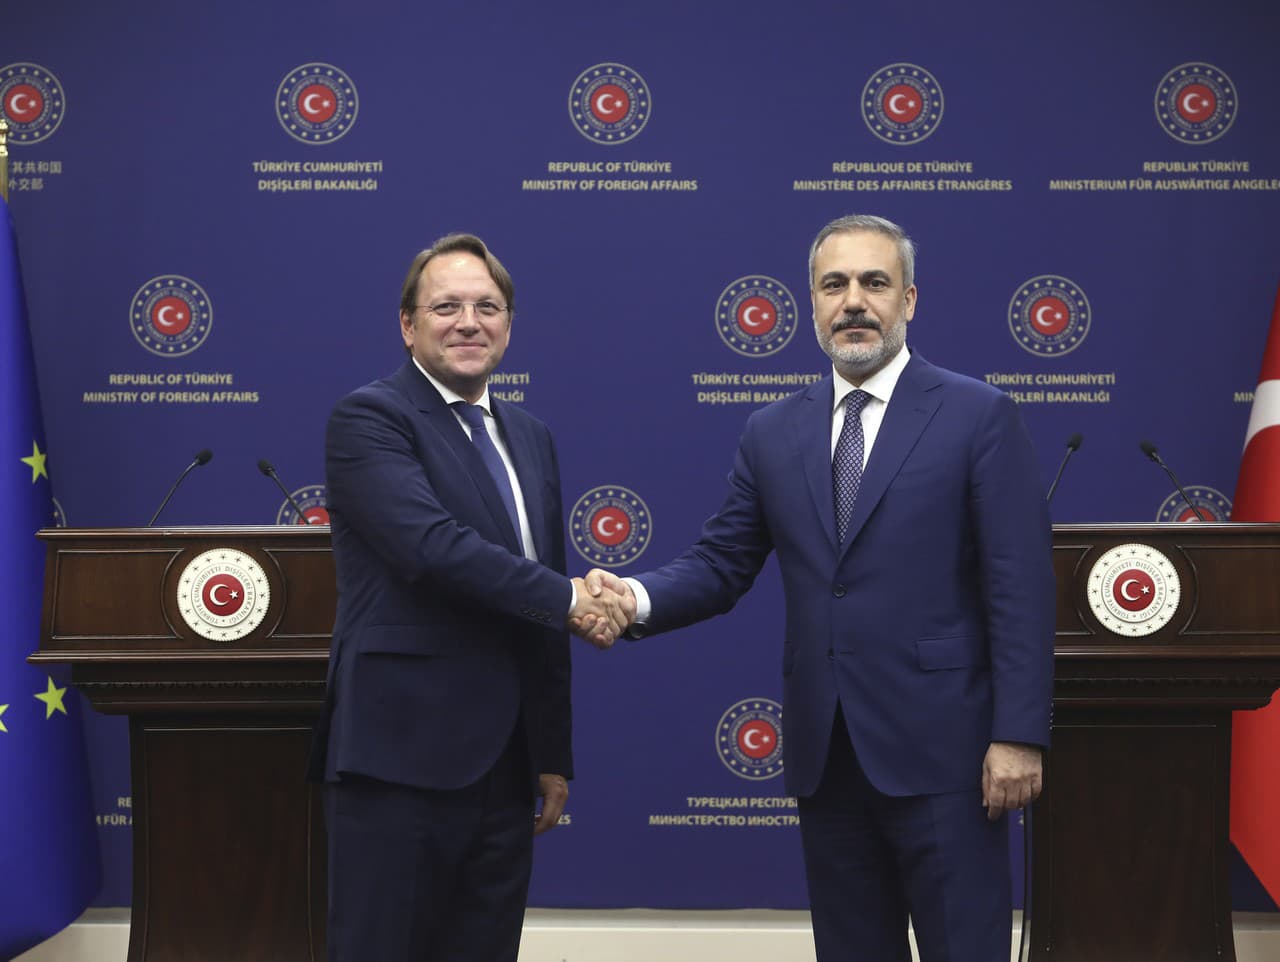 Turecký minister zahraničných vecí Hakan Fidan (vpravo) si podáva ruku s komisárom EÚ pre susedstvo a rozšírenie Oliverom Varhelym.